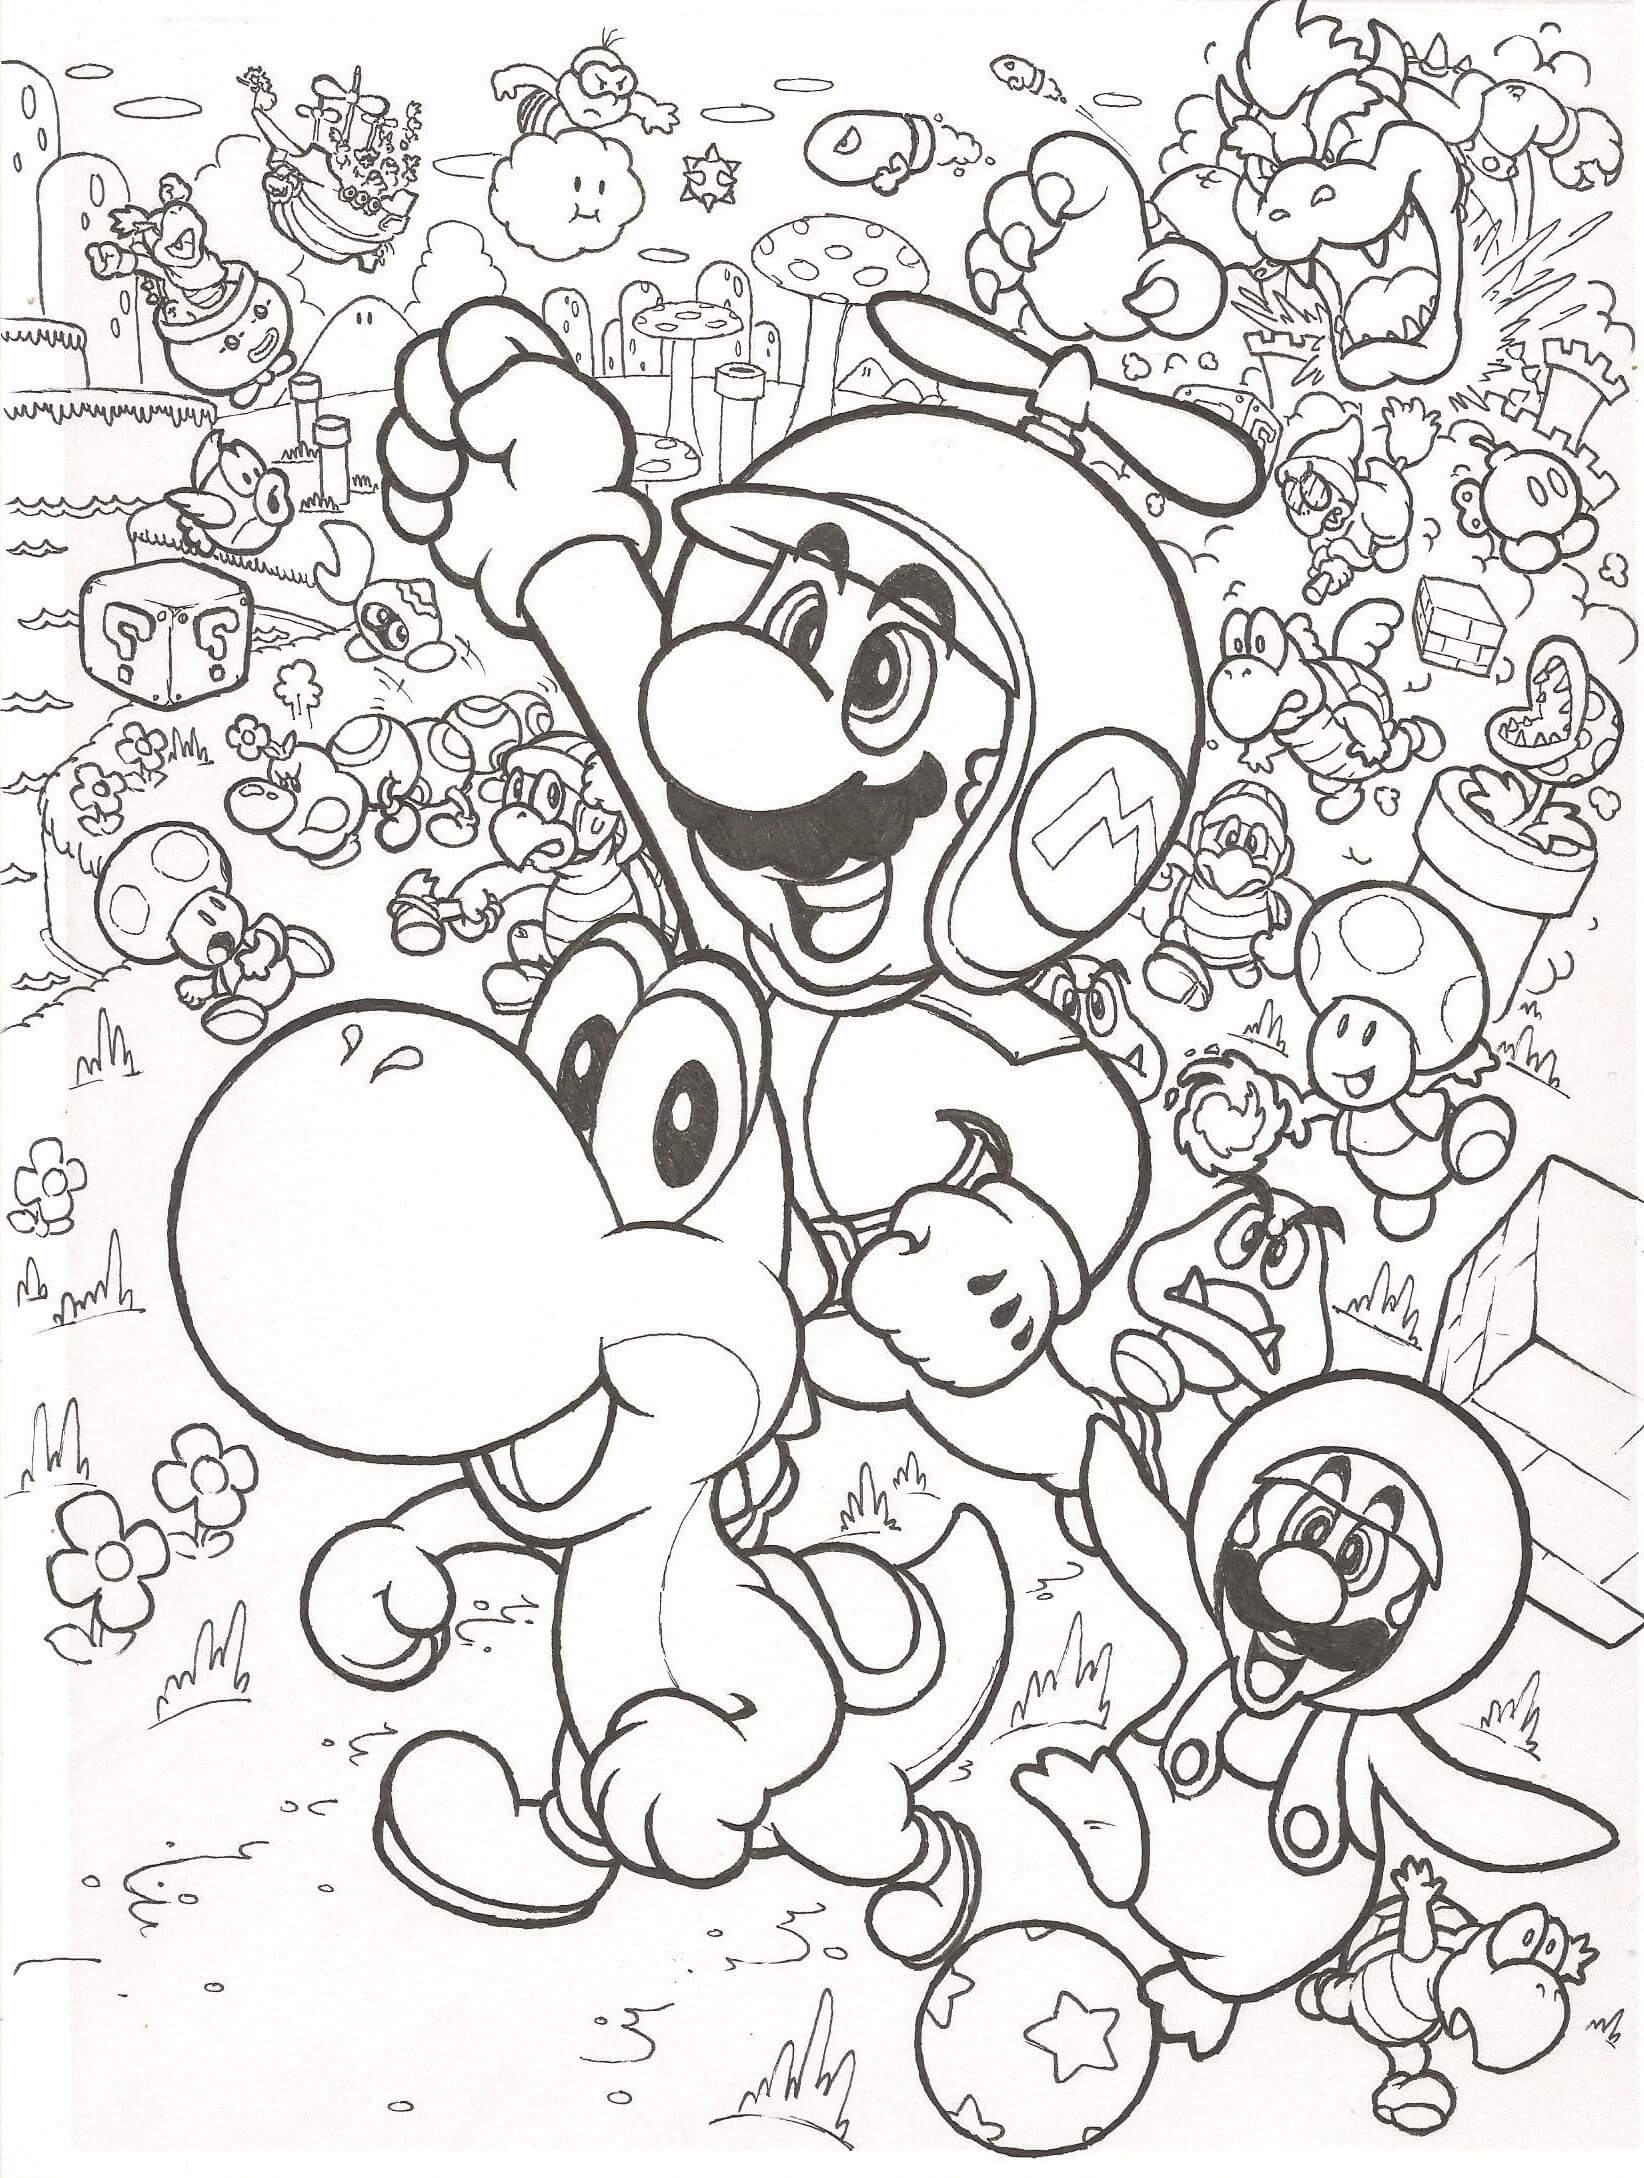 Mario Voando para colorir